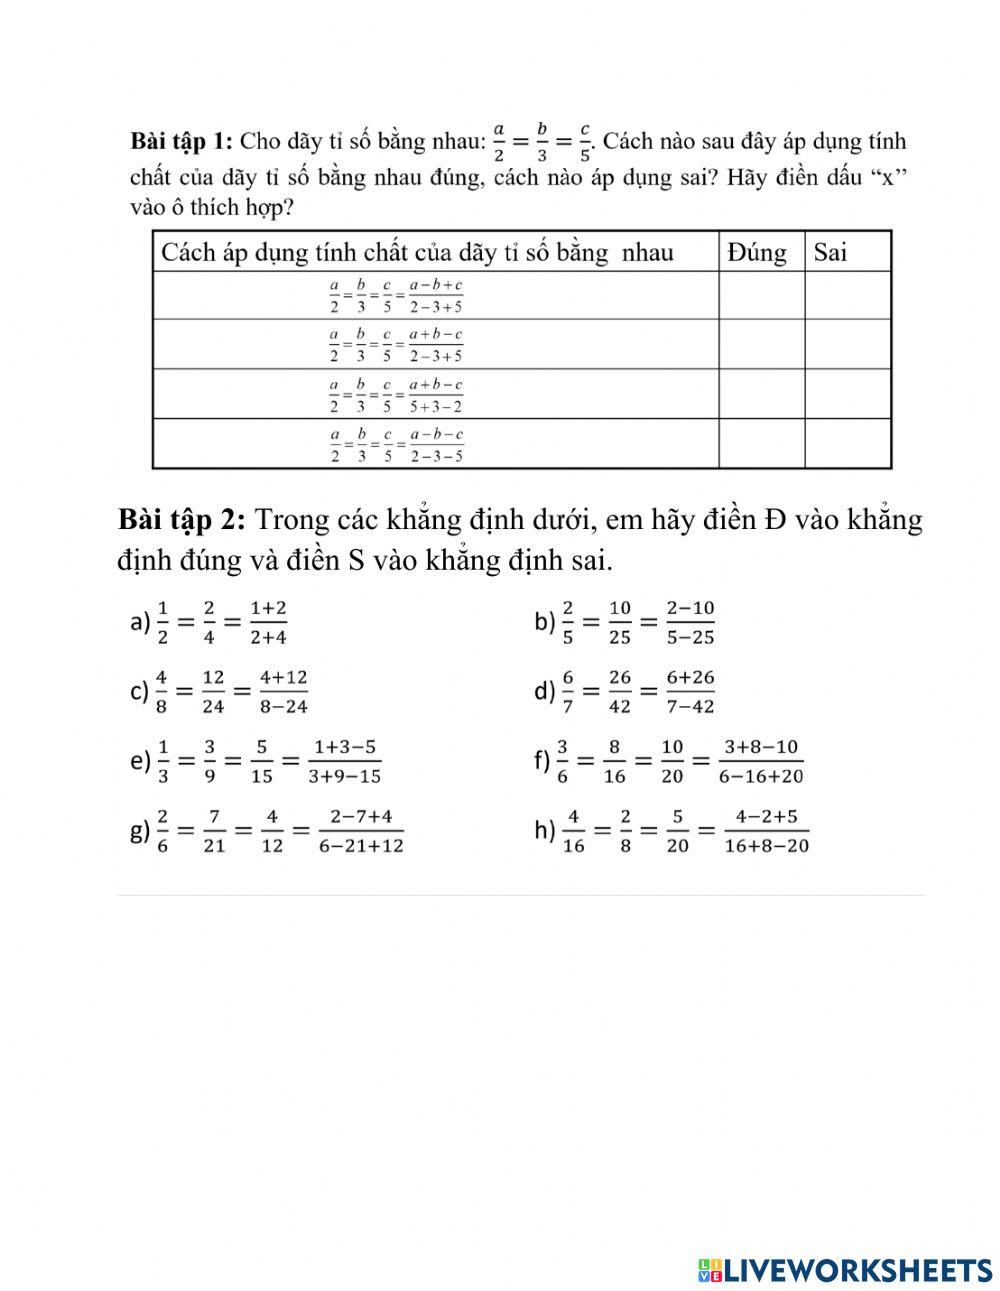 Bài 8 tính chất dãy tỉ số bằng nhau LT1 (t1)